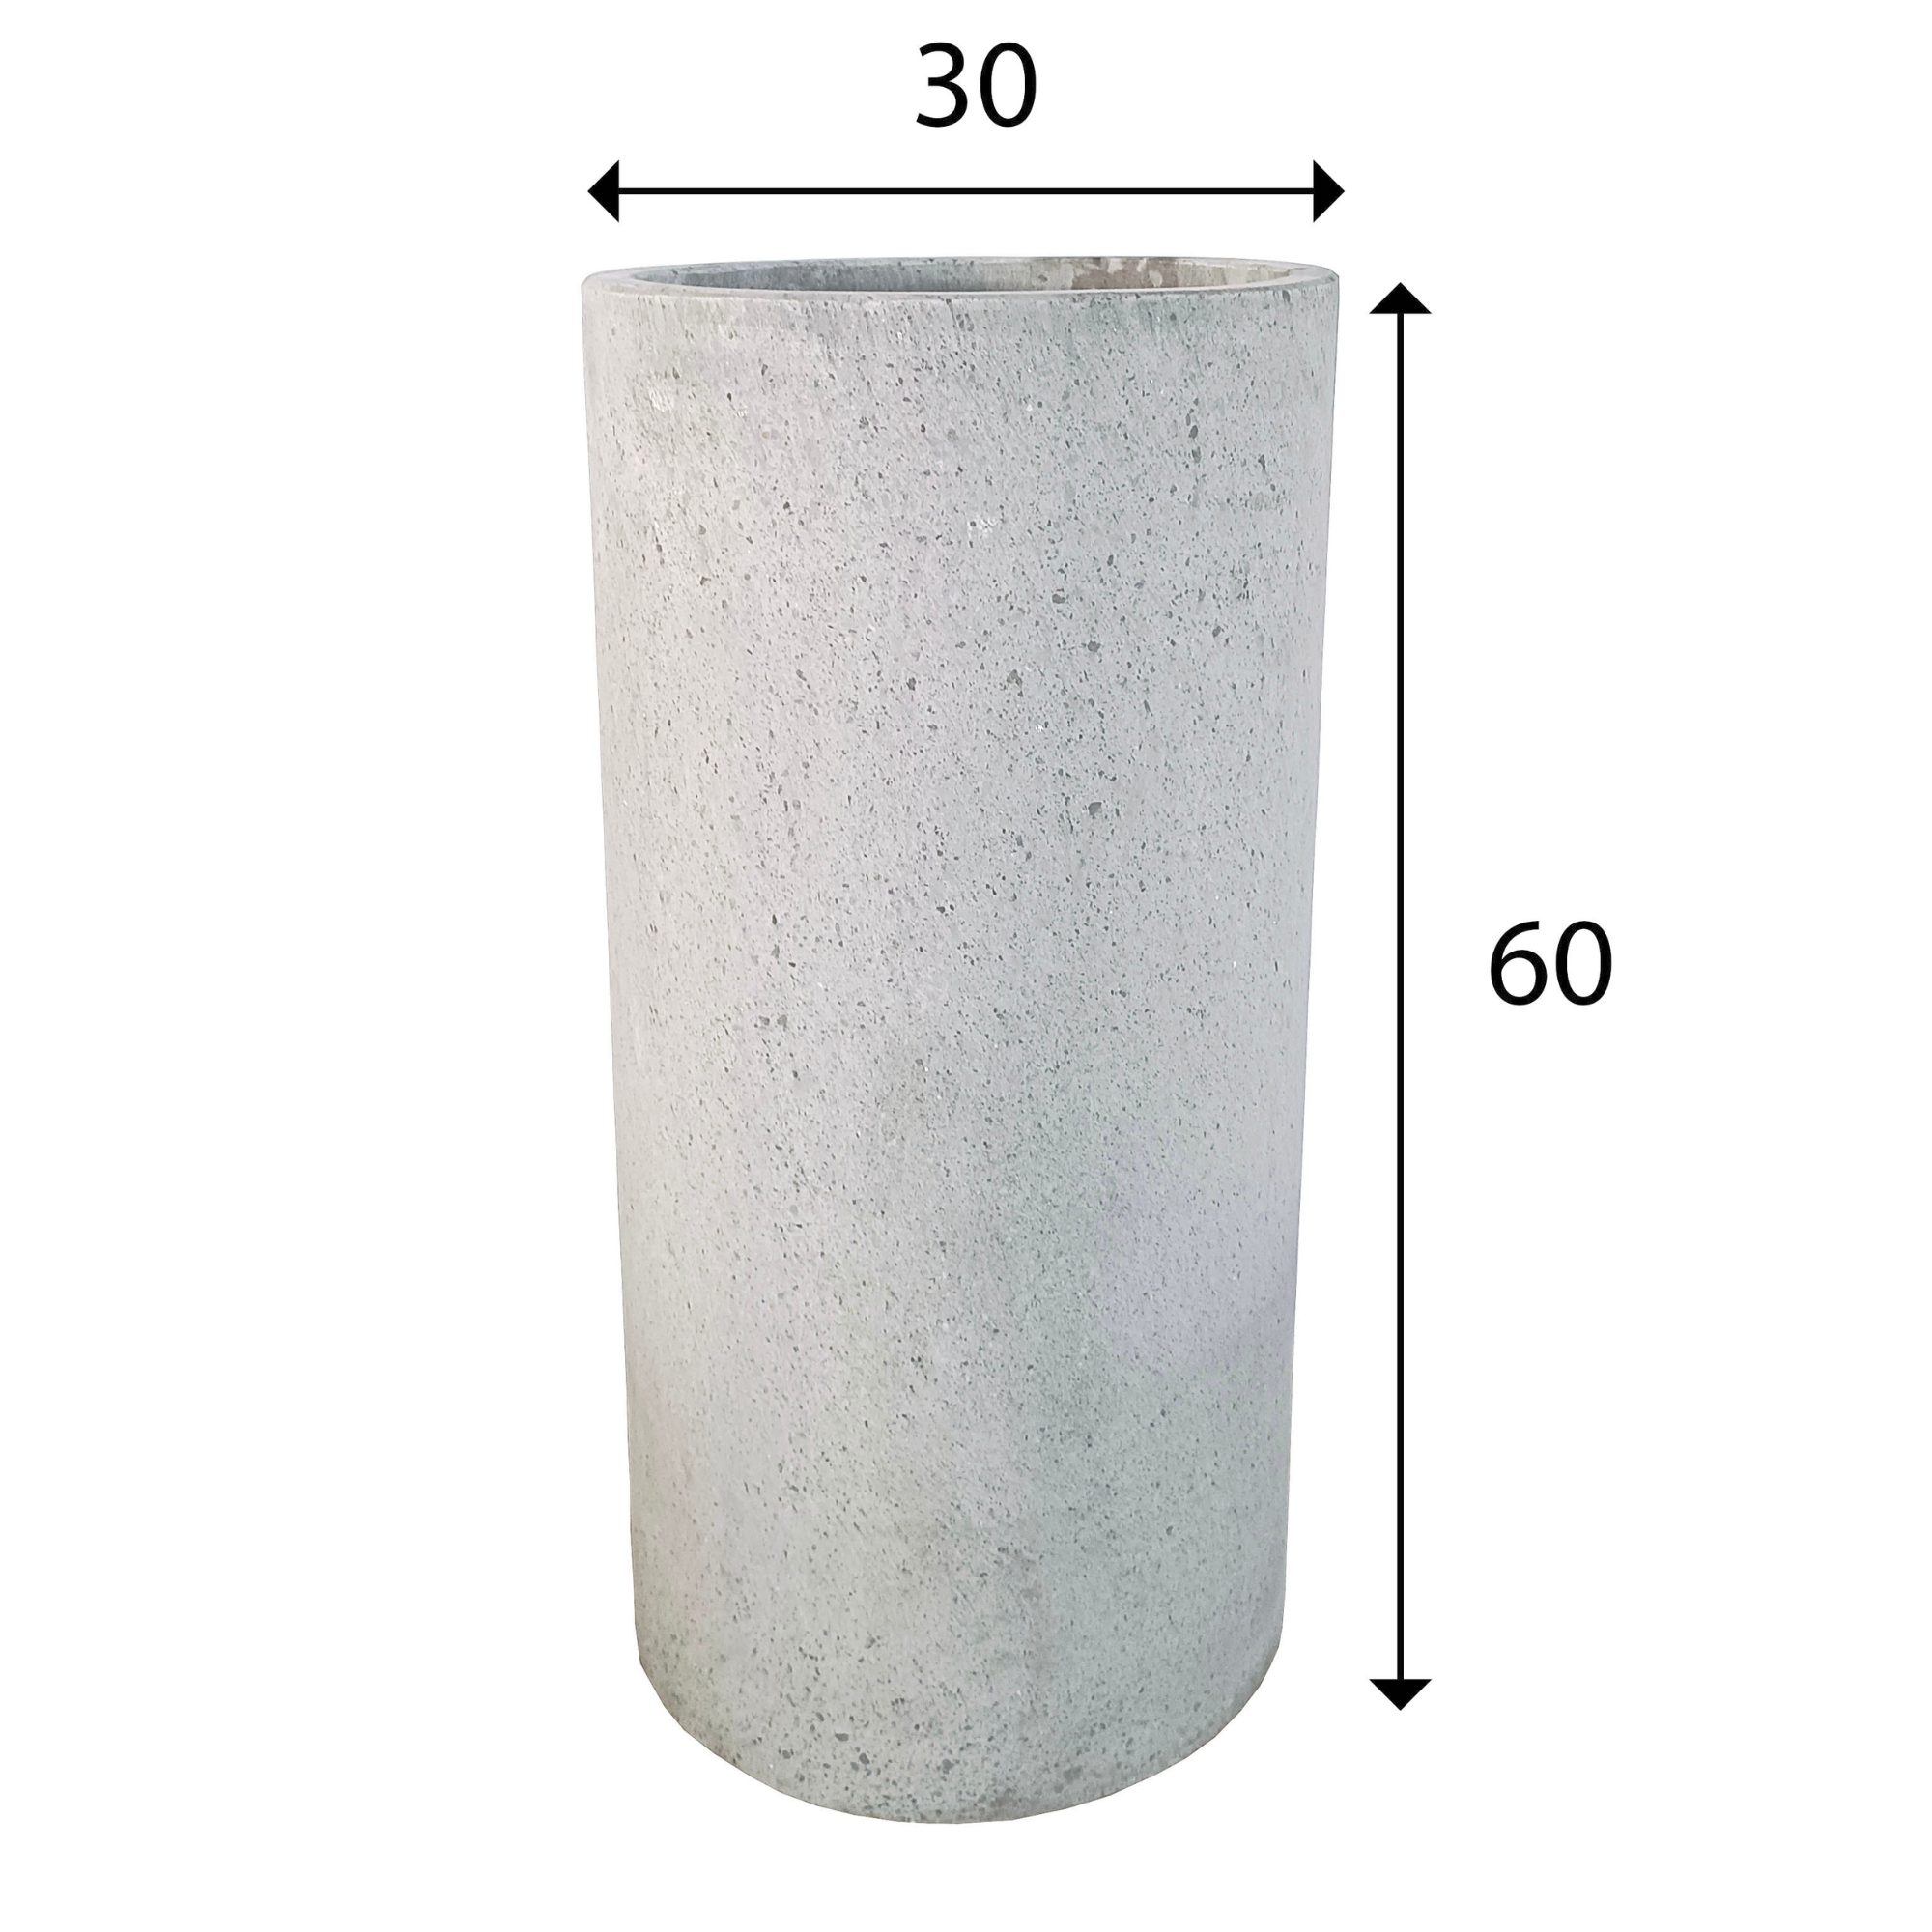 Coal Grey Terrazzo Indoor/Outdoor Plant Pot By Roots30W*30D*60H. (8785193107777)